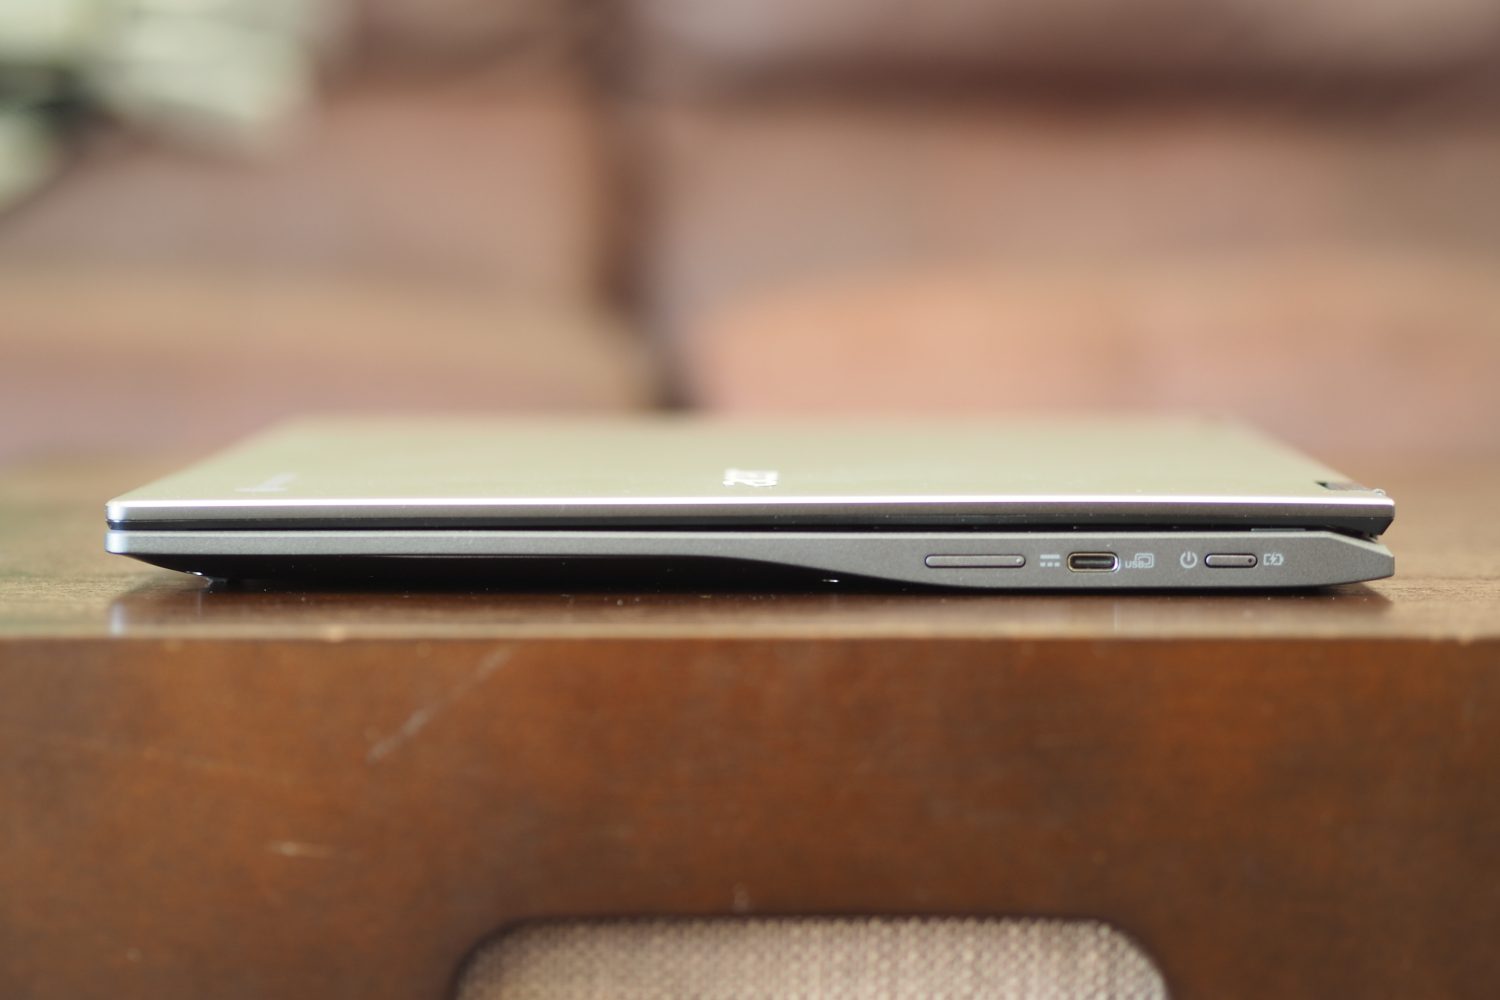 Vista lateral direita do Acer Chromebook Spin 513 mostrando as portas.